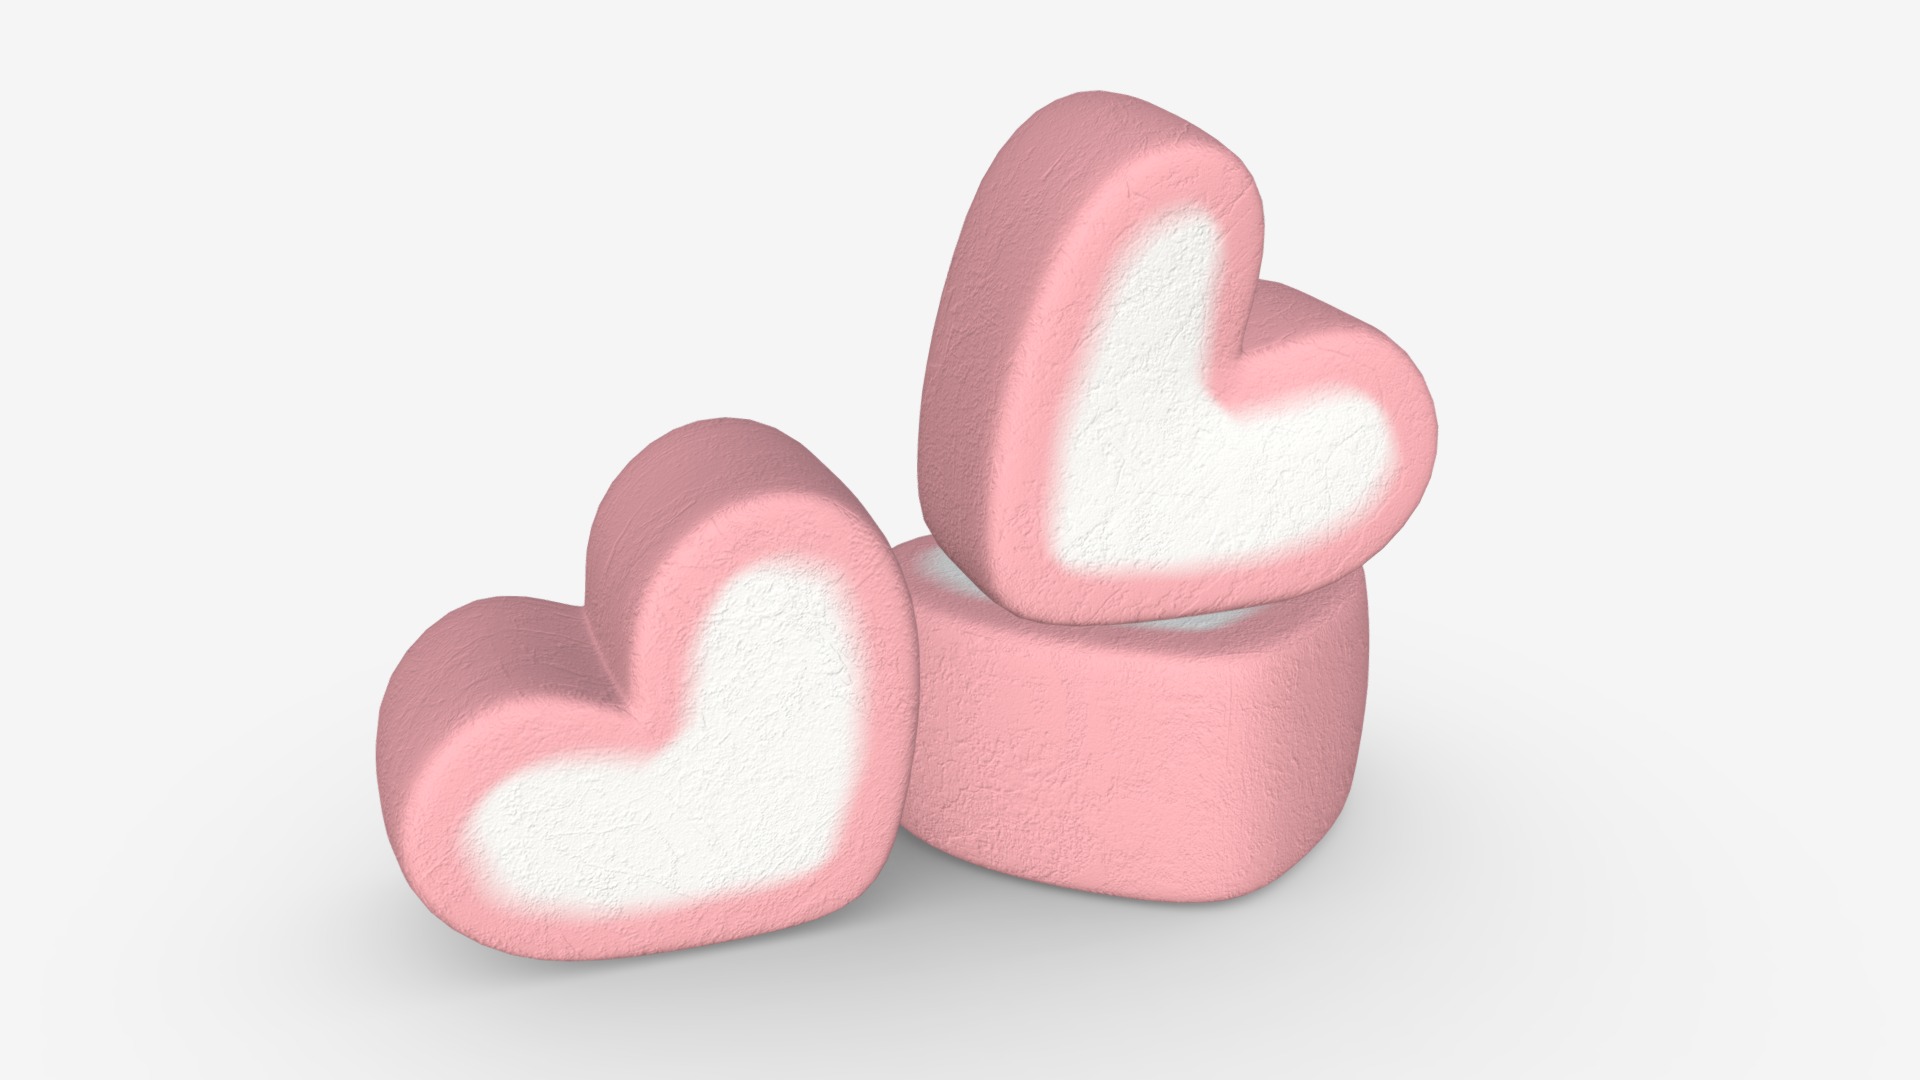 3D model Marshmallows candy heart shape model - This is a 3D model of the Marshmallows candy heart shape model. The 3D model is about a pink heart shaped object.